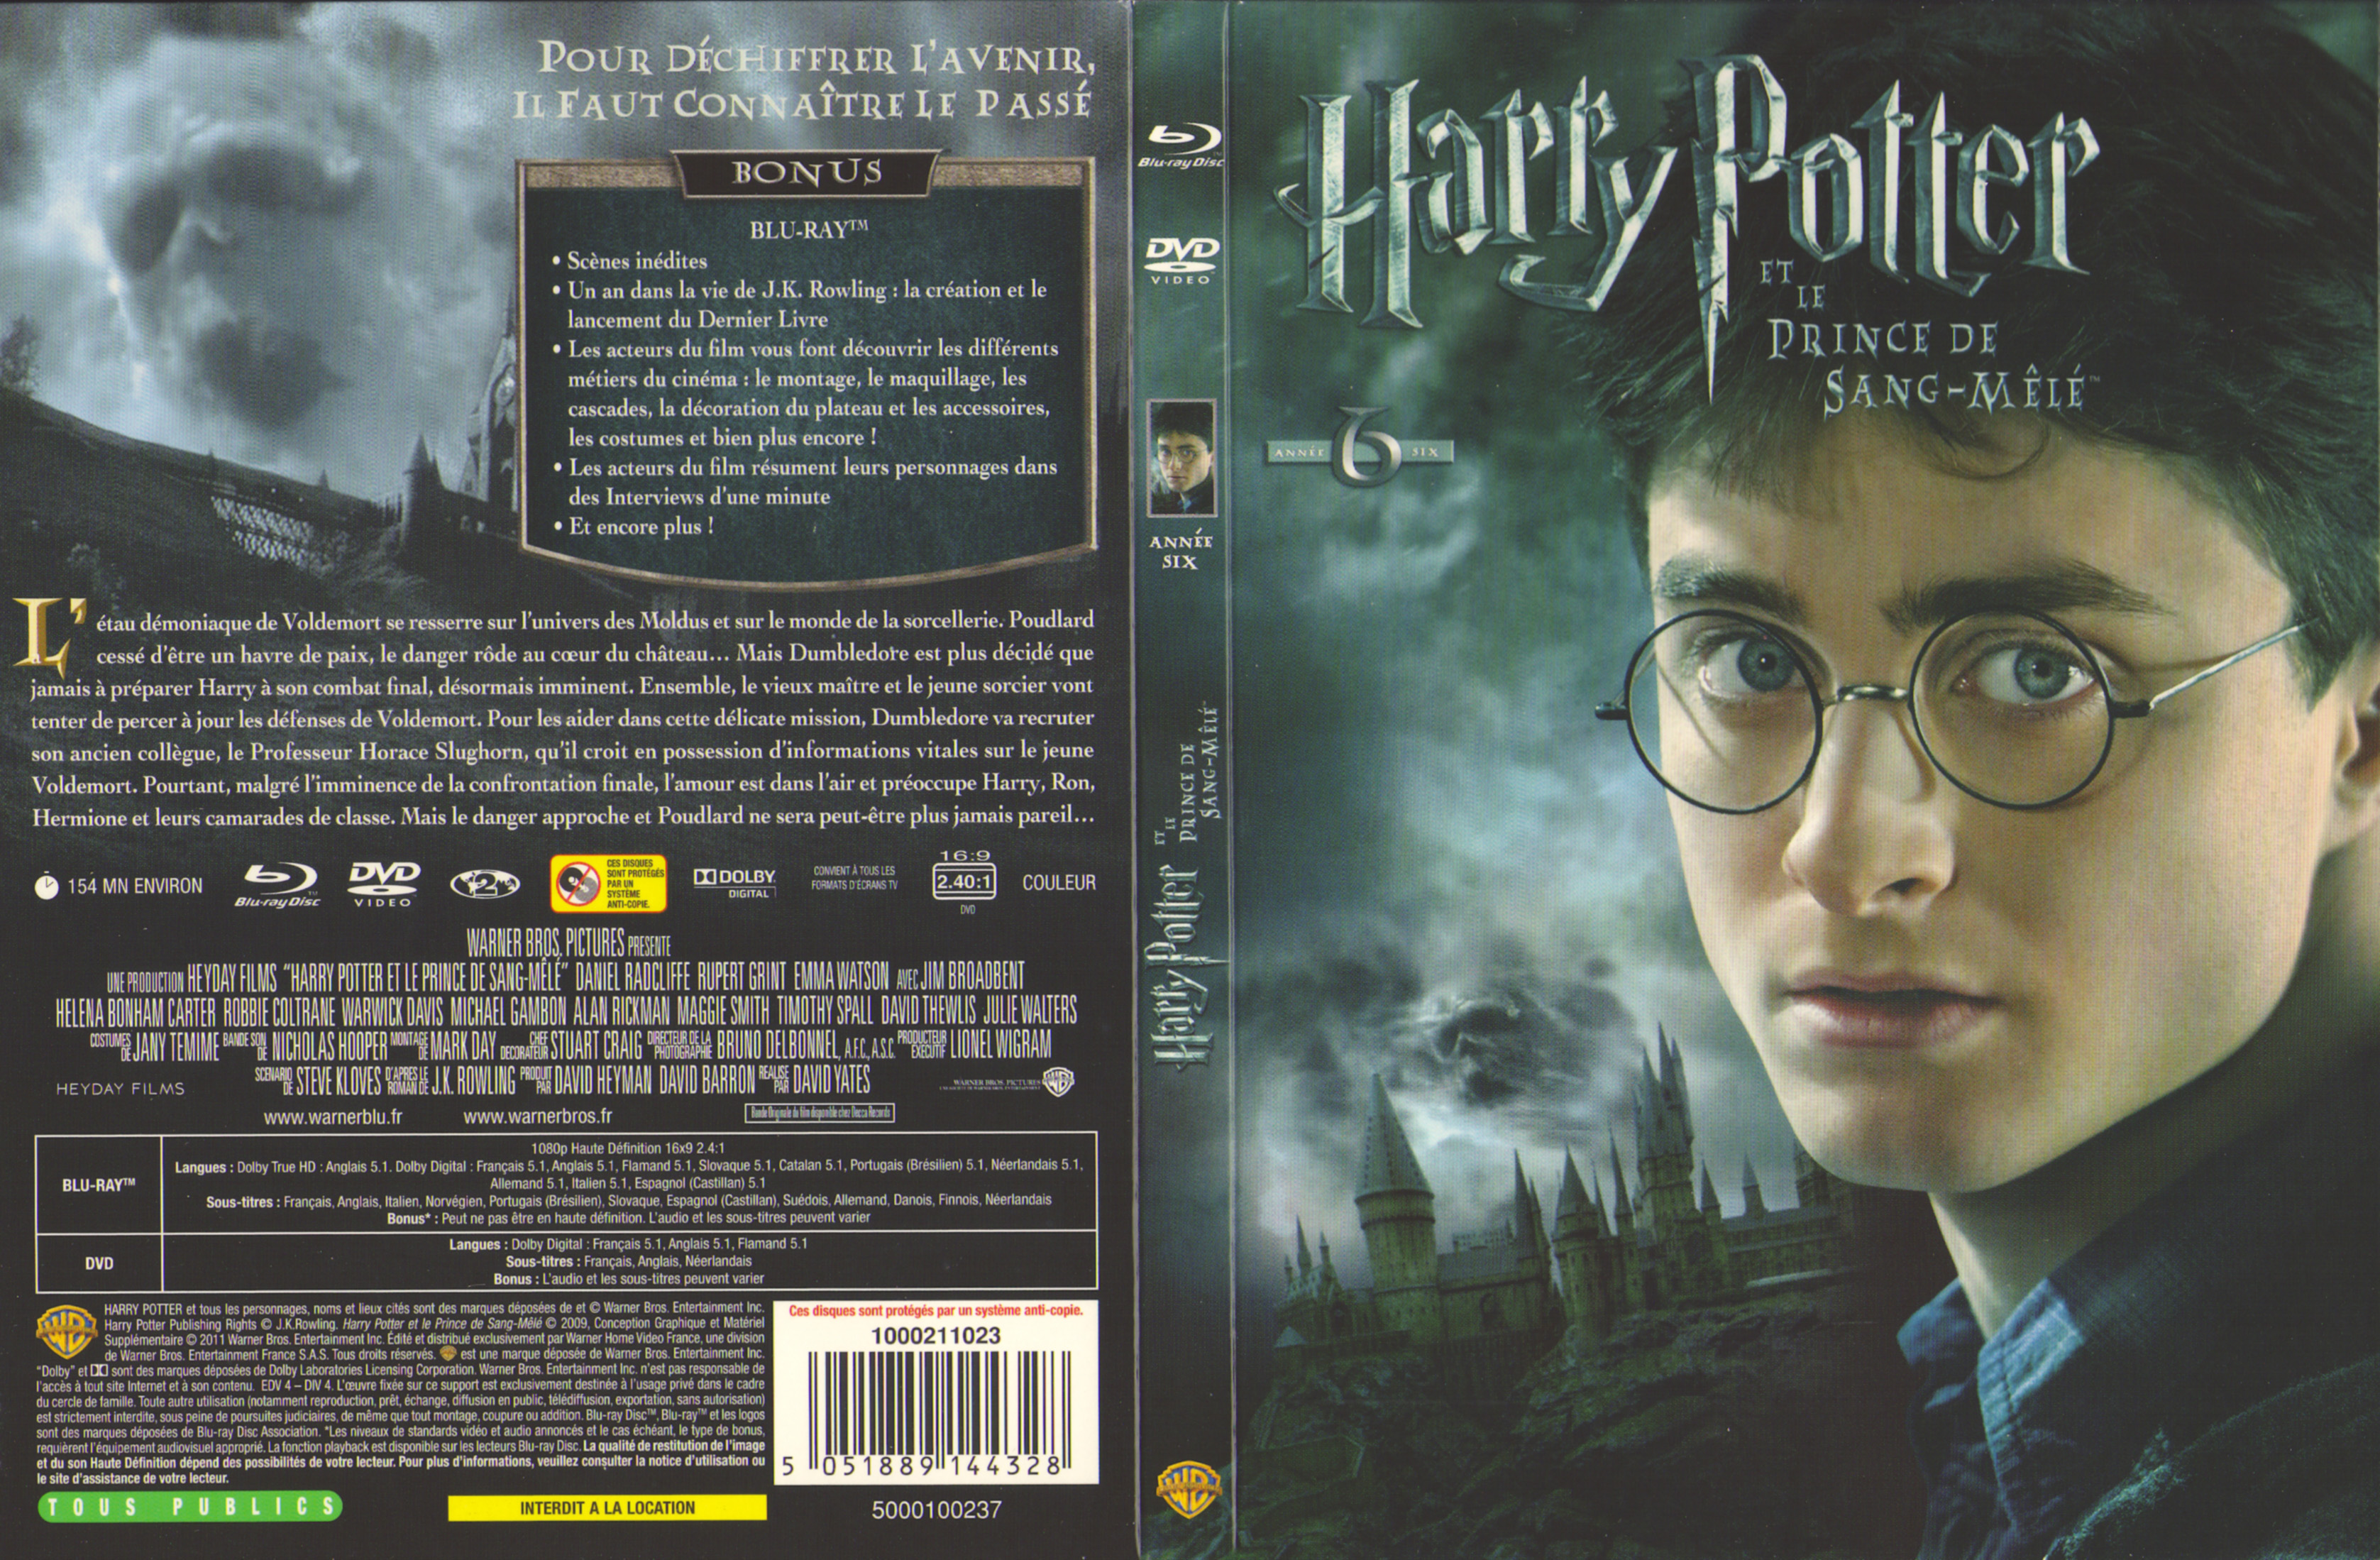 Jaquette DVD Harry Potter et le Prince de Sang-Ml (BLU-RAY)